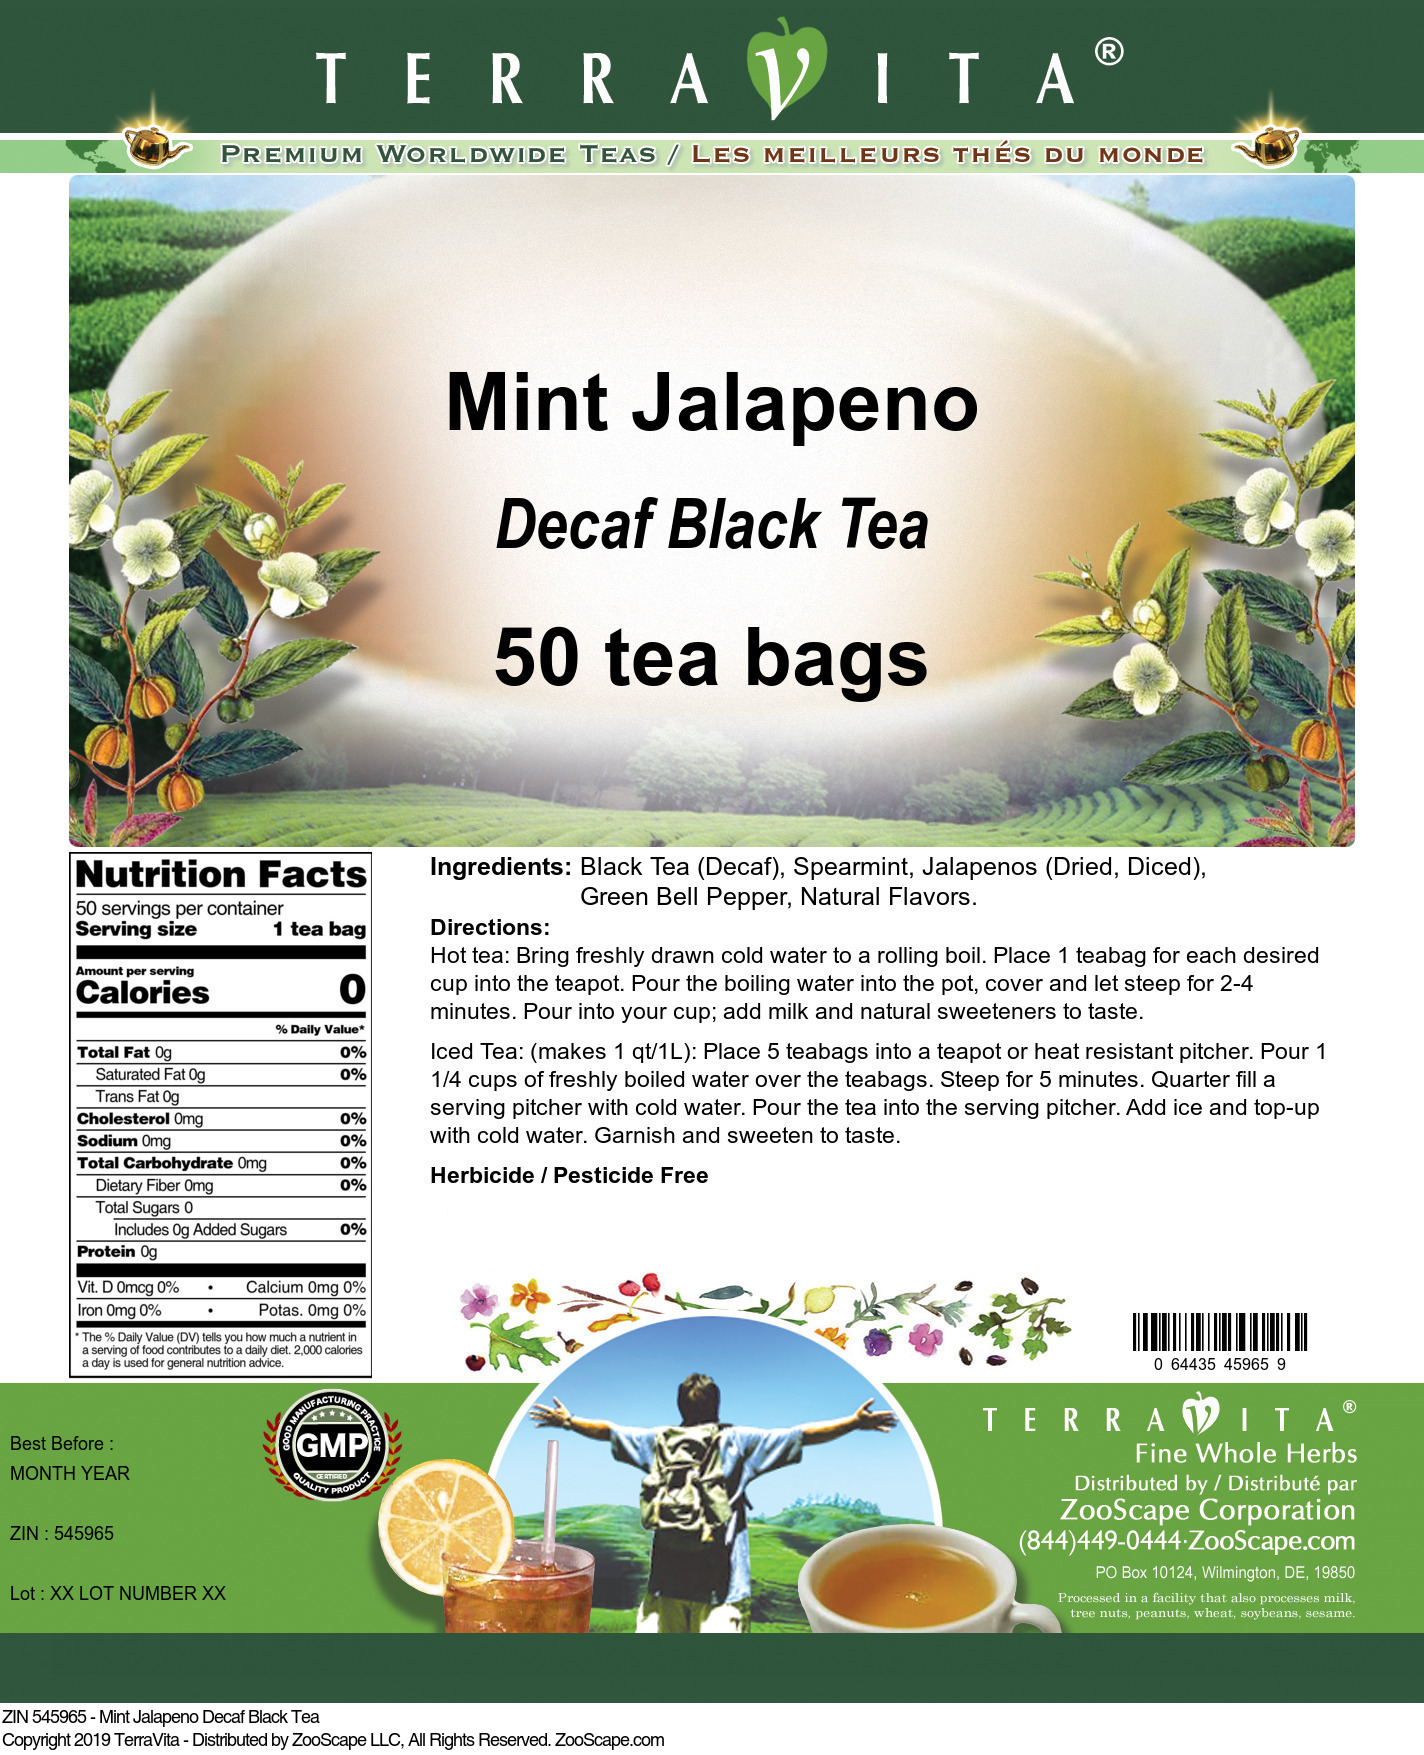 Mint Jalapeno Decaf Black Tea - Label